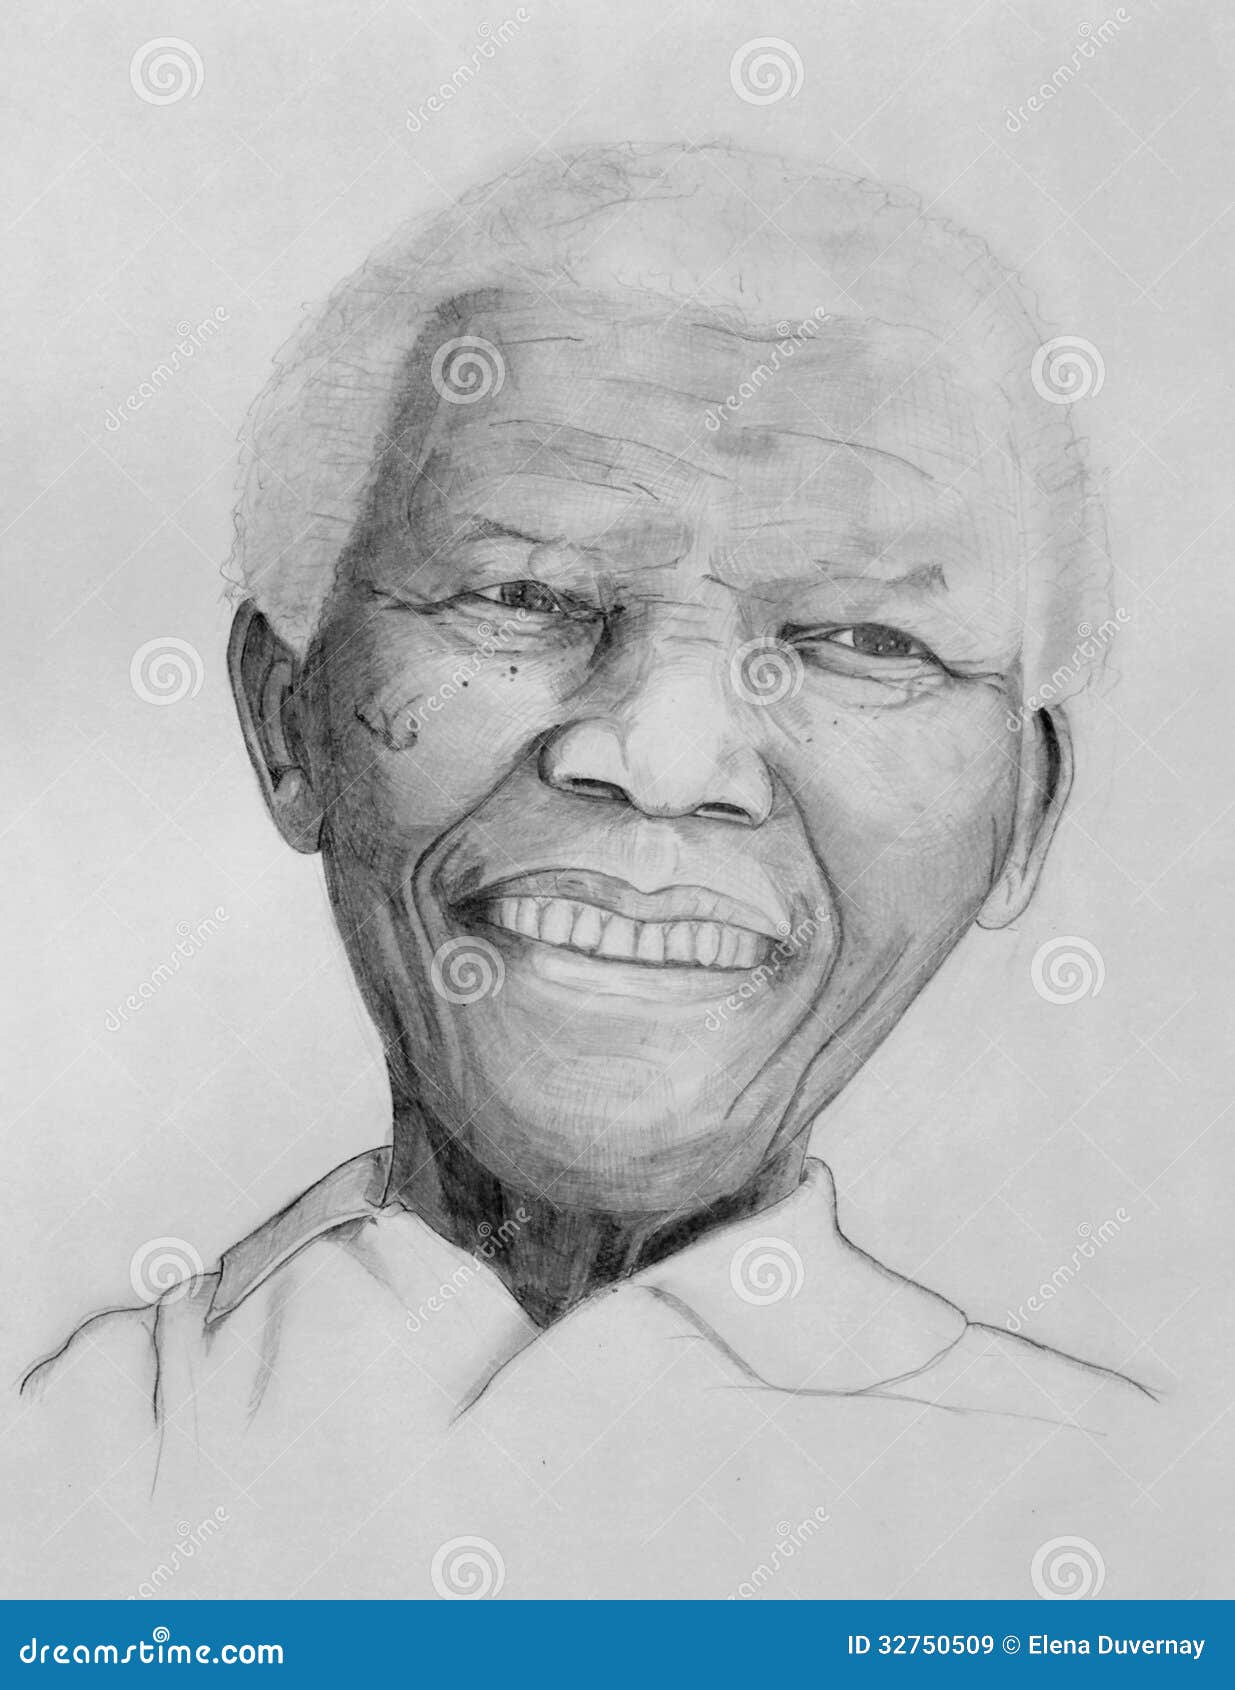 Nelson Mandela Coloring Page | Free Mandela Online Coloring